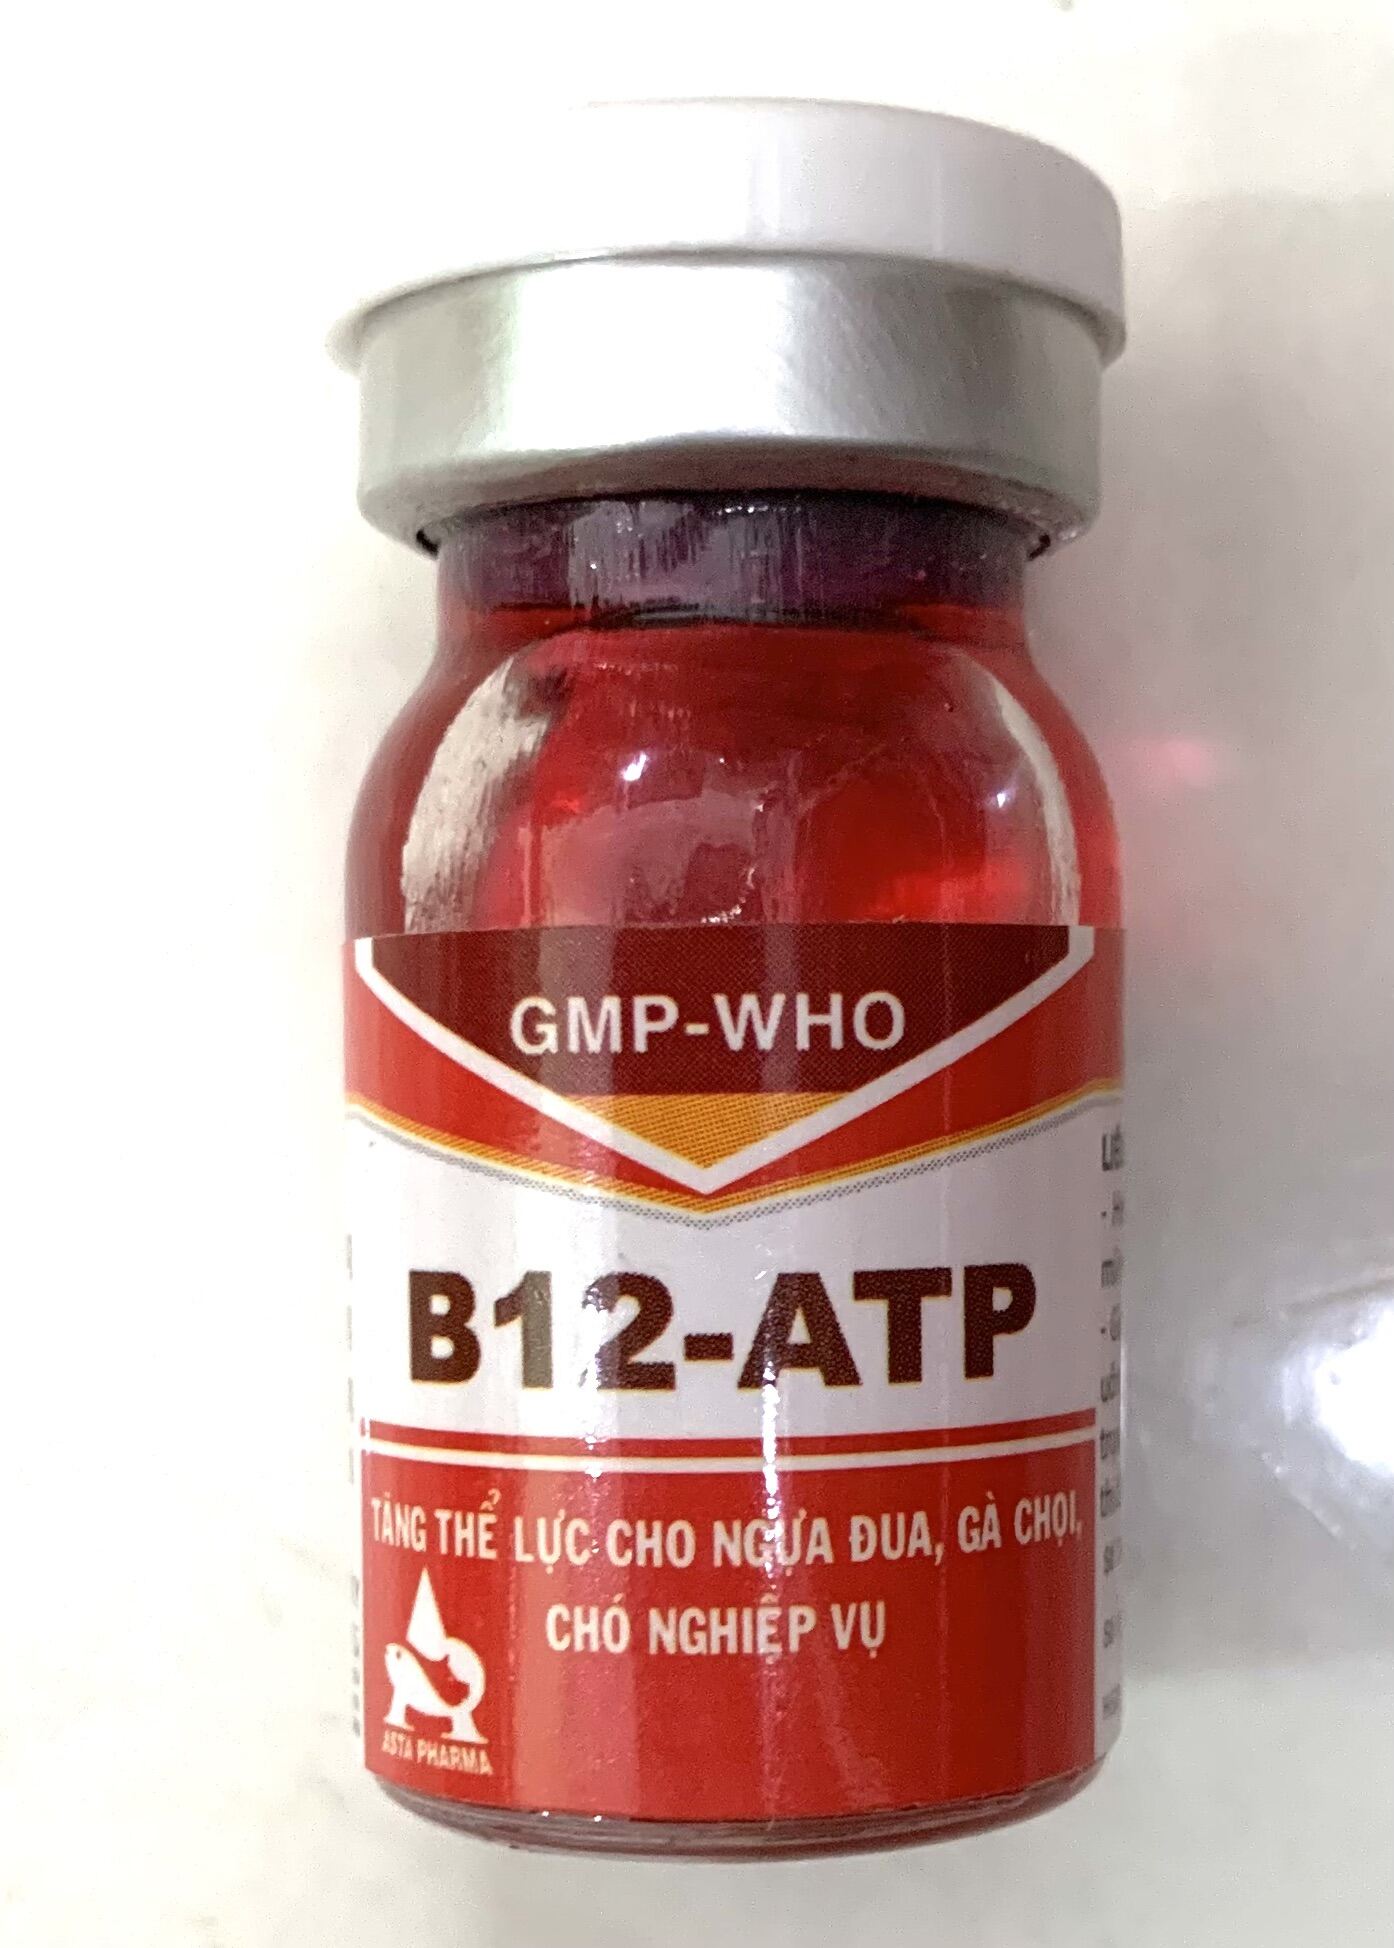 ATP-B12 Tăng thể lực ngựa đua, gà chọi, chó nghiệp vụ lọ 5 ml.